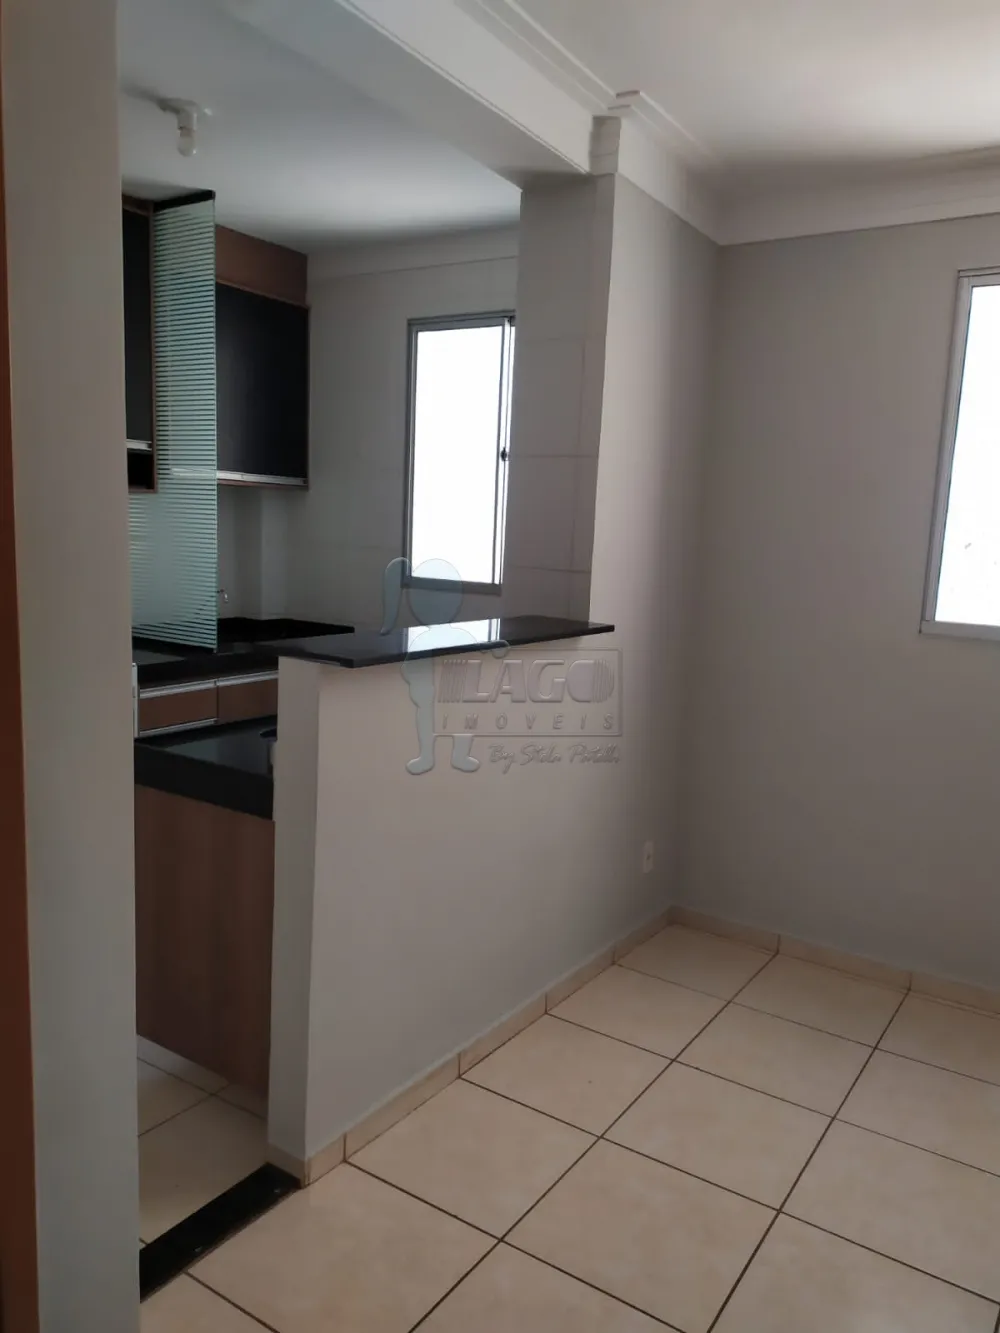 Alugar Apartamentos / Padrão em Ribeirão Preto R$ 790,00 - Foto 2